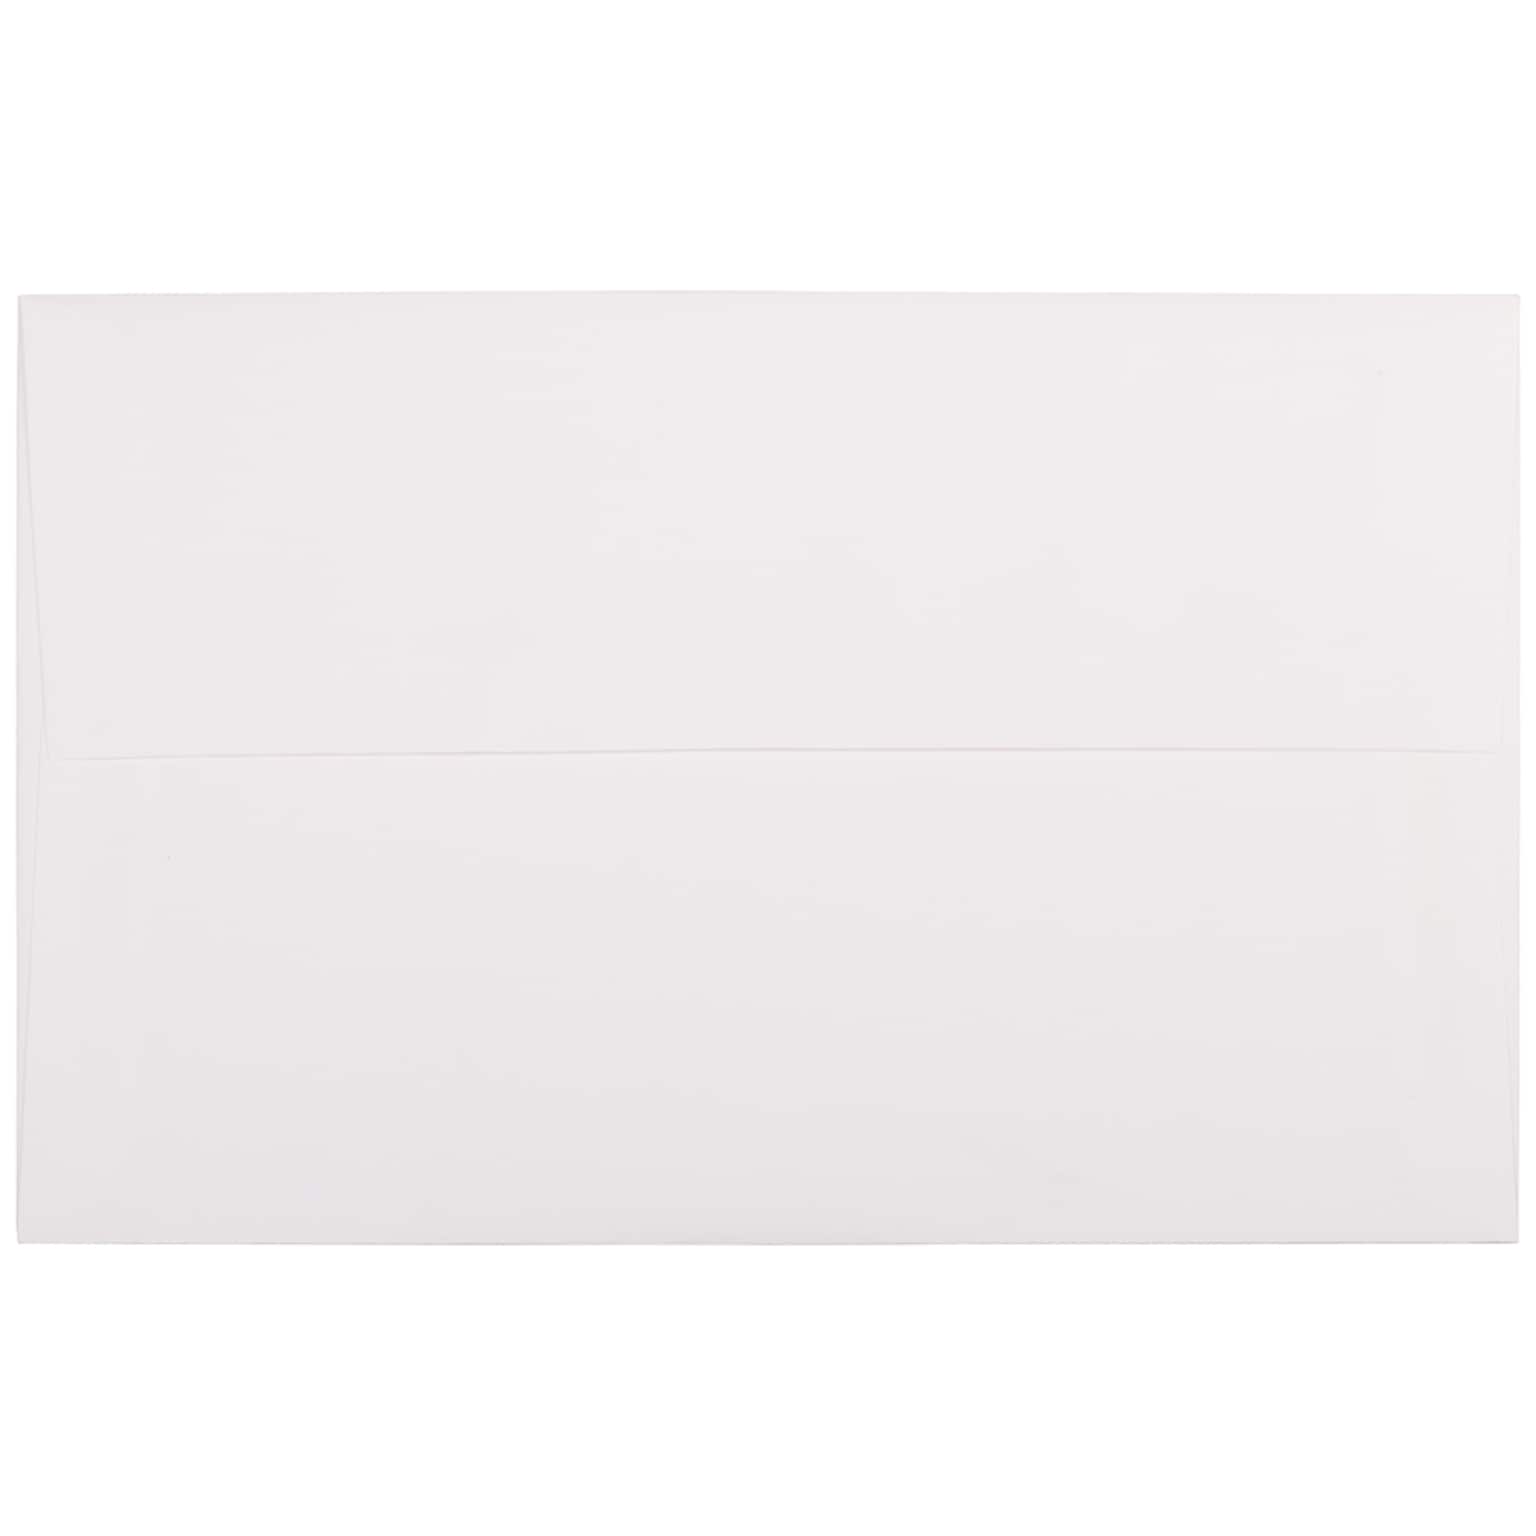 JAM Paper A10 Strathmore Invitation Envelopes, 6 x 9.5, Bright White Laid, 25/Pack (88154)